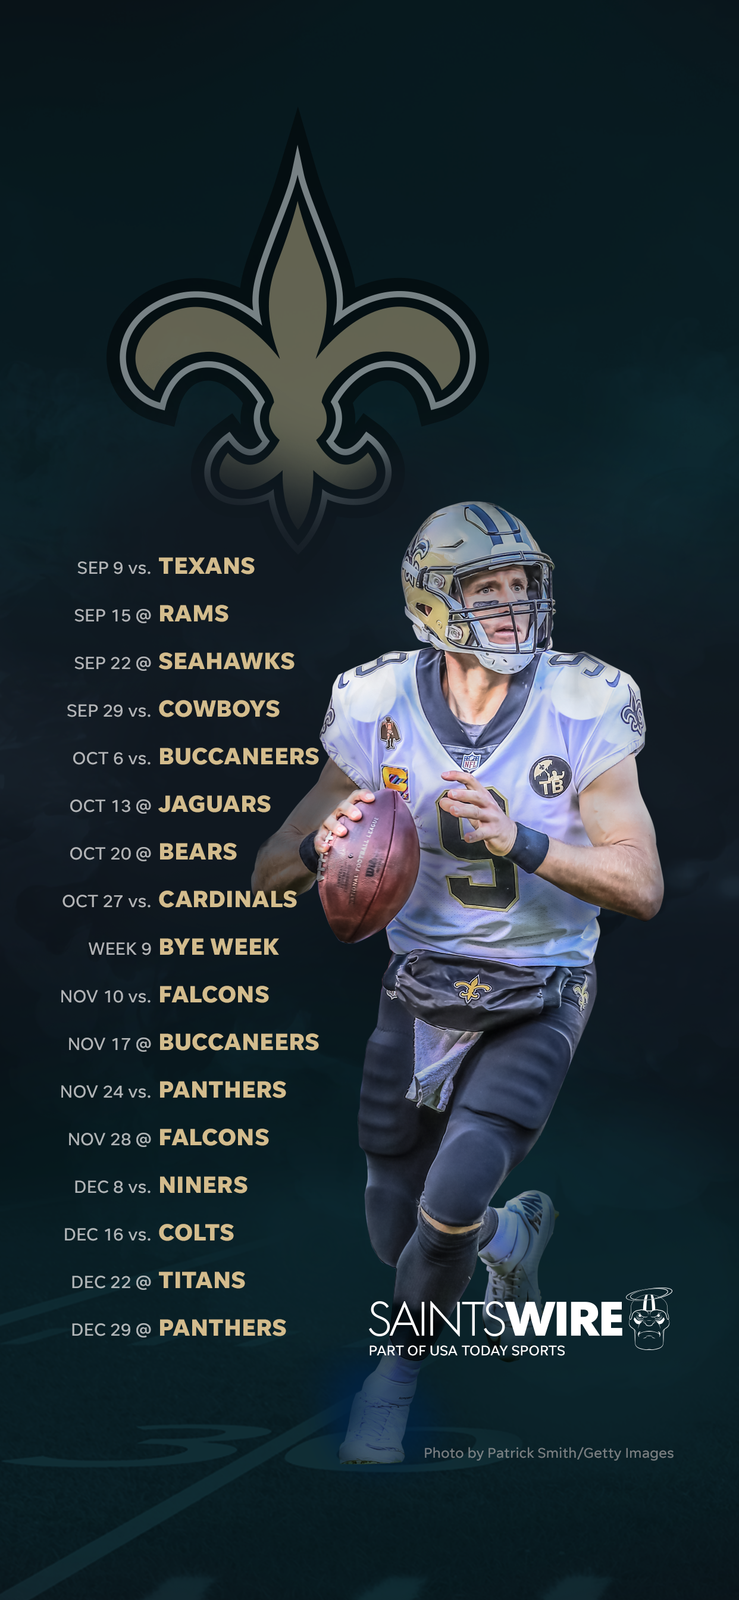 2019 New Orleans Saints schedule: Downloadable wallpaper